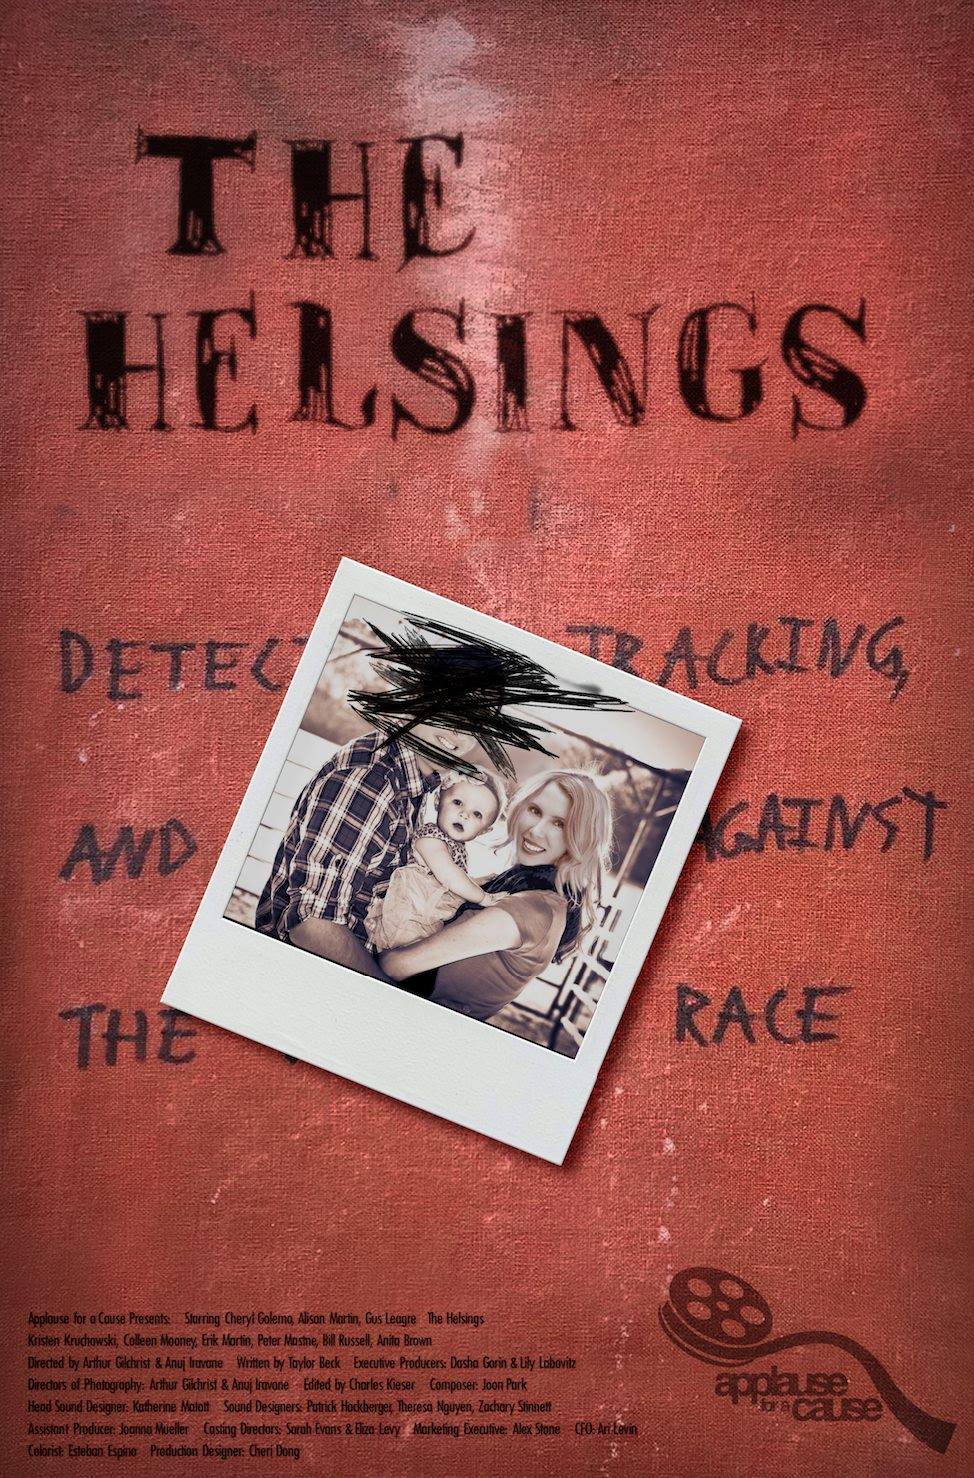 The Helsings